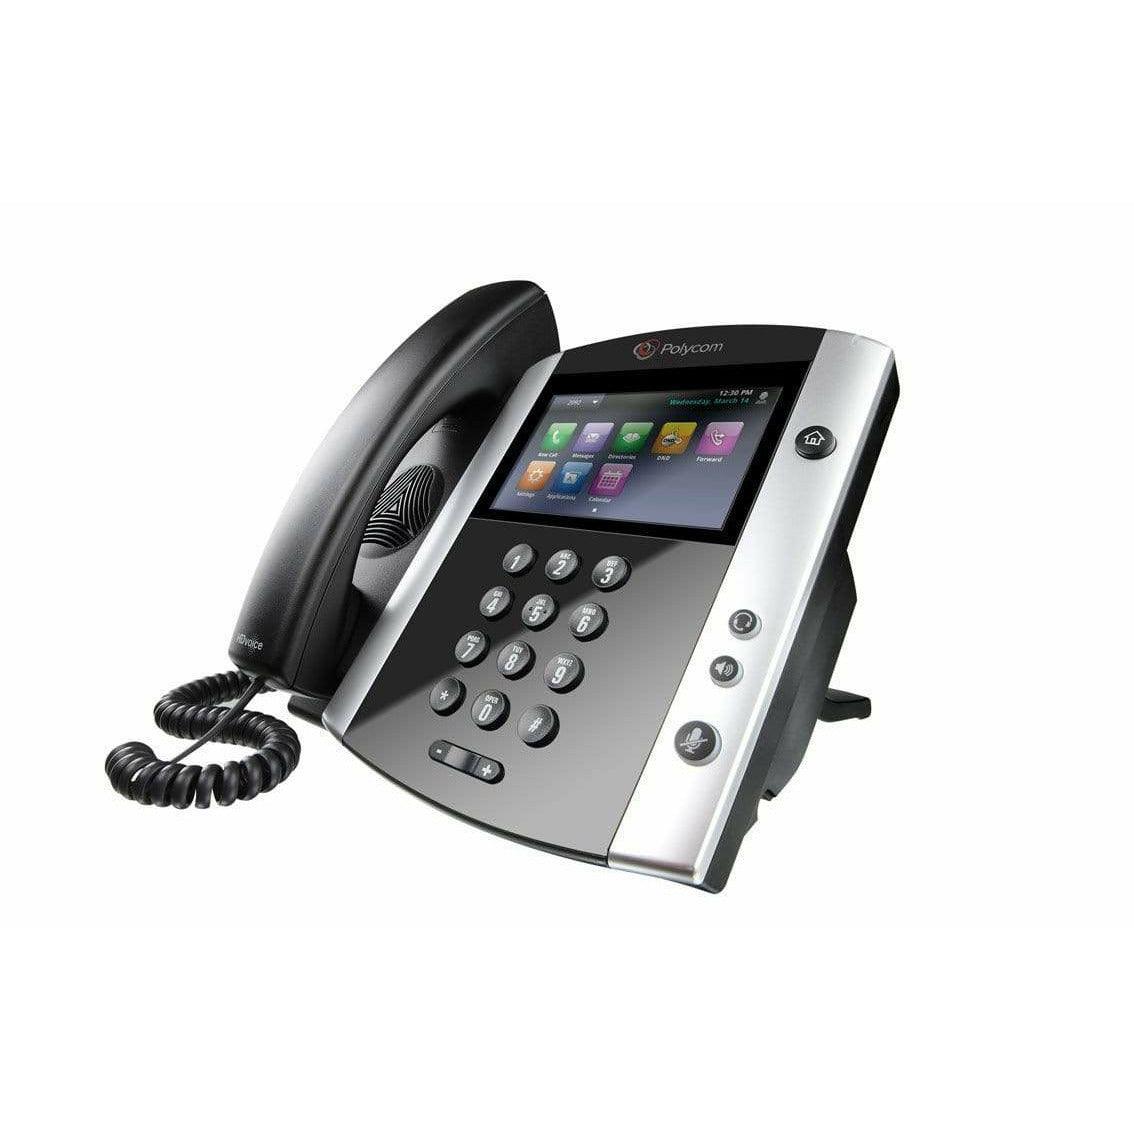 Polycom VVX600 Gigabit IP Phone - VVX 600 2200-44600-025 Refurbished - POLY-VVX-600-R - Reef Telecom